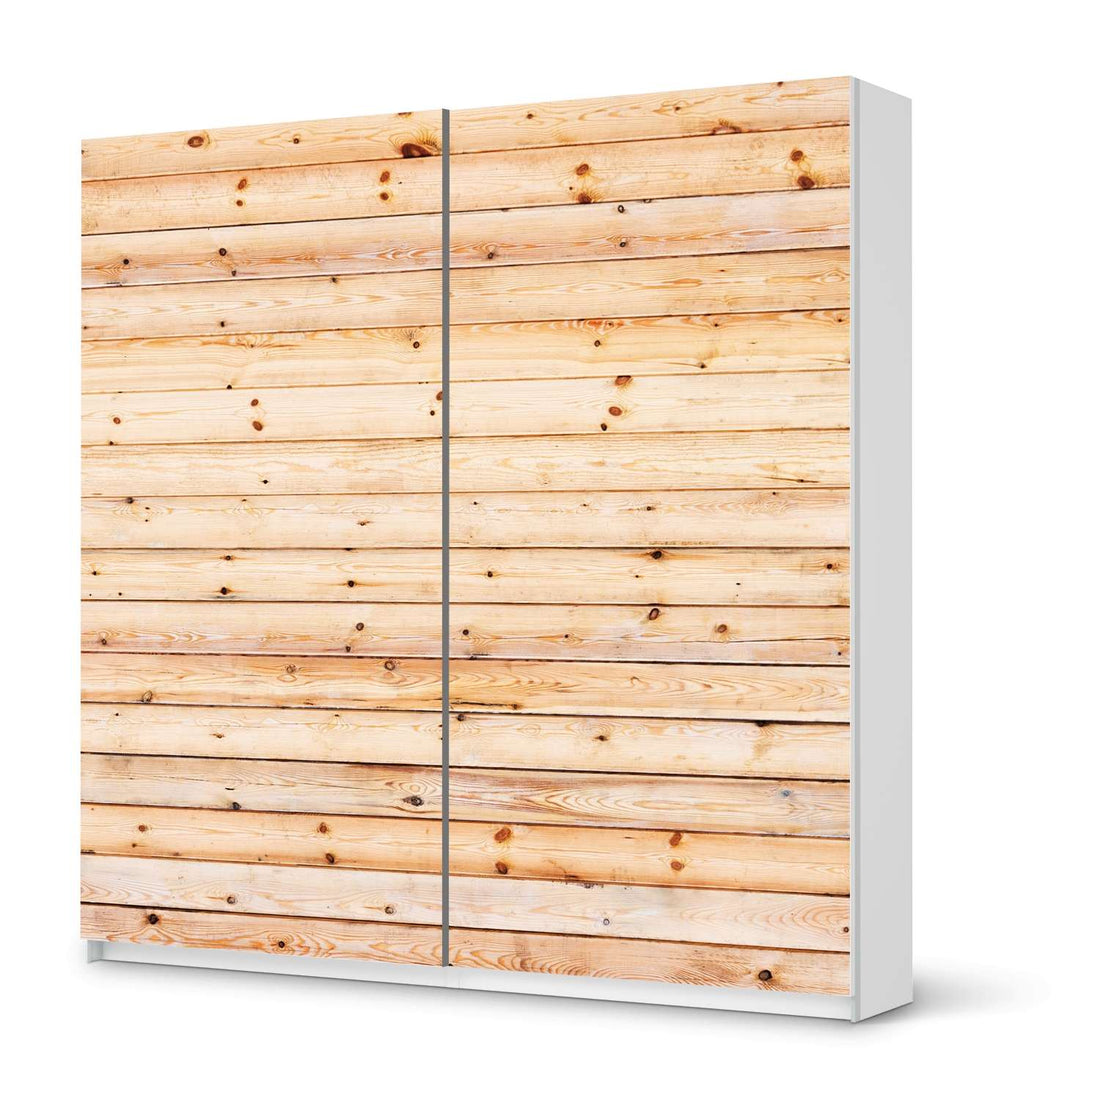 Möbel Klebefolie Bright Planks - IKEA Pax Schrank 201 cm Höhe - Schiebetür - weiss